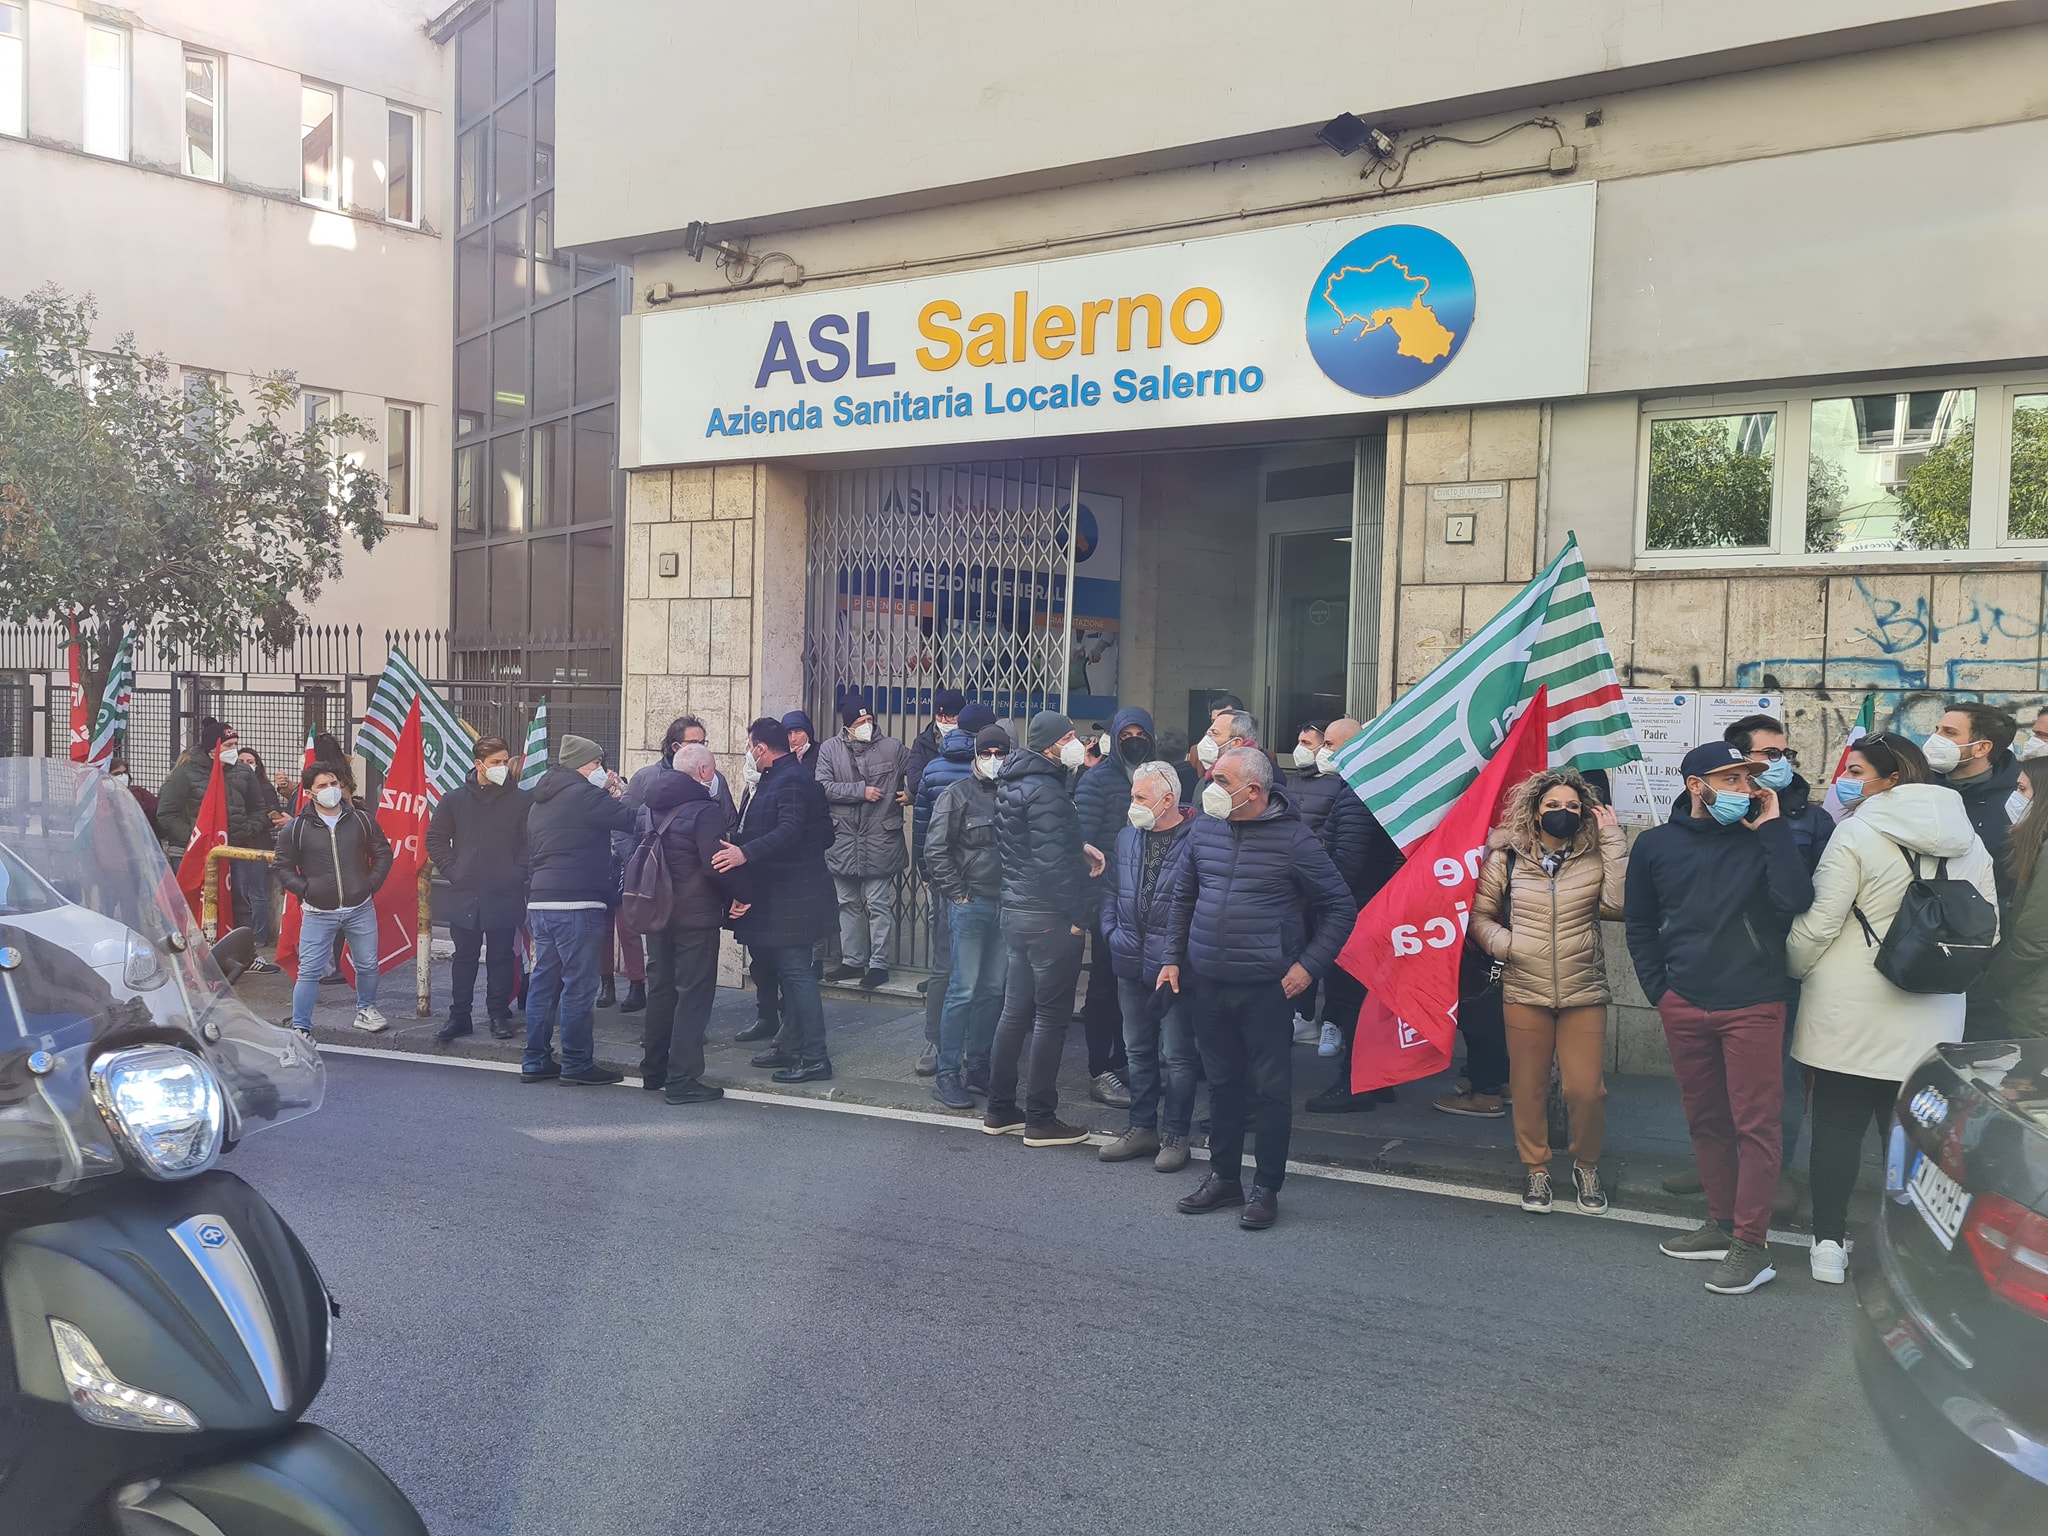 Asl Salerno, sindacati annunciano sciopero generale: “Gestione paralizzata, negati diritti ai lavoratori”